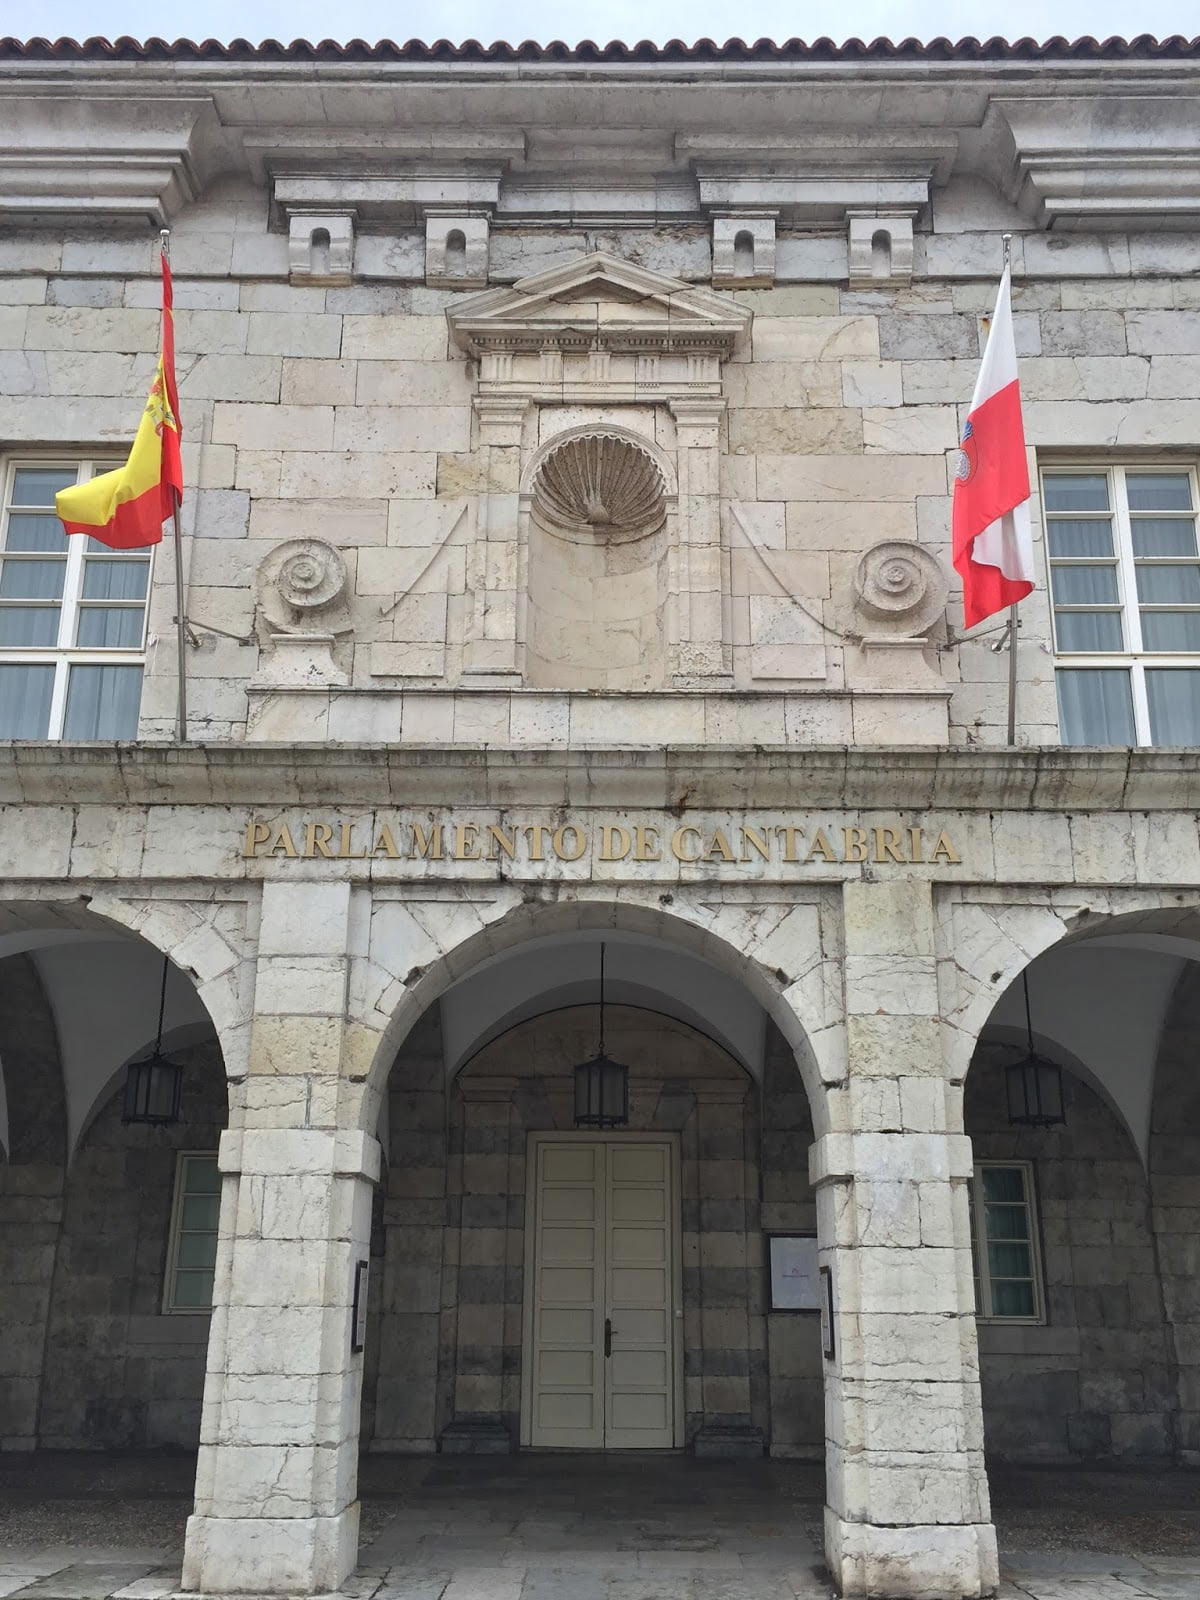 Parlamento de Cantabria